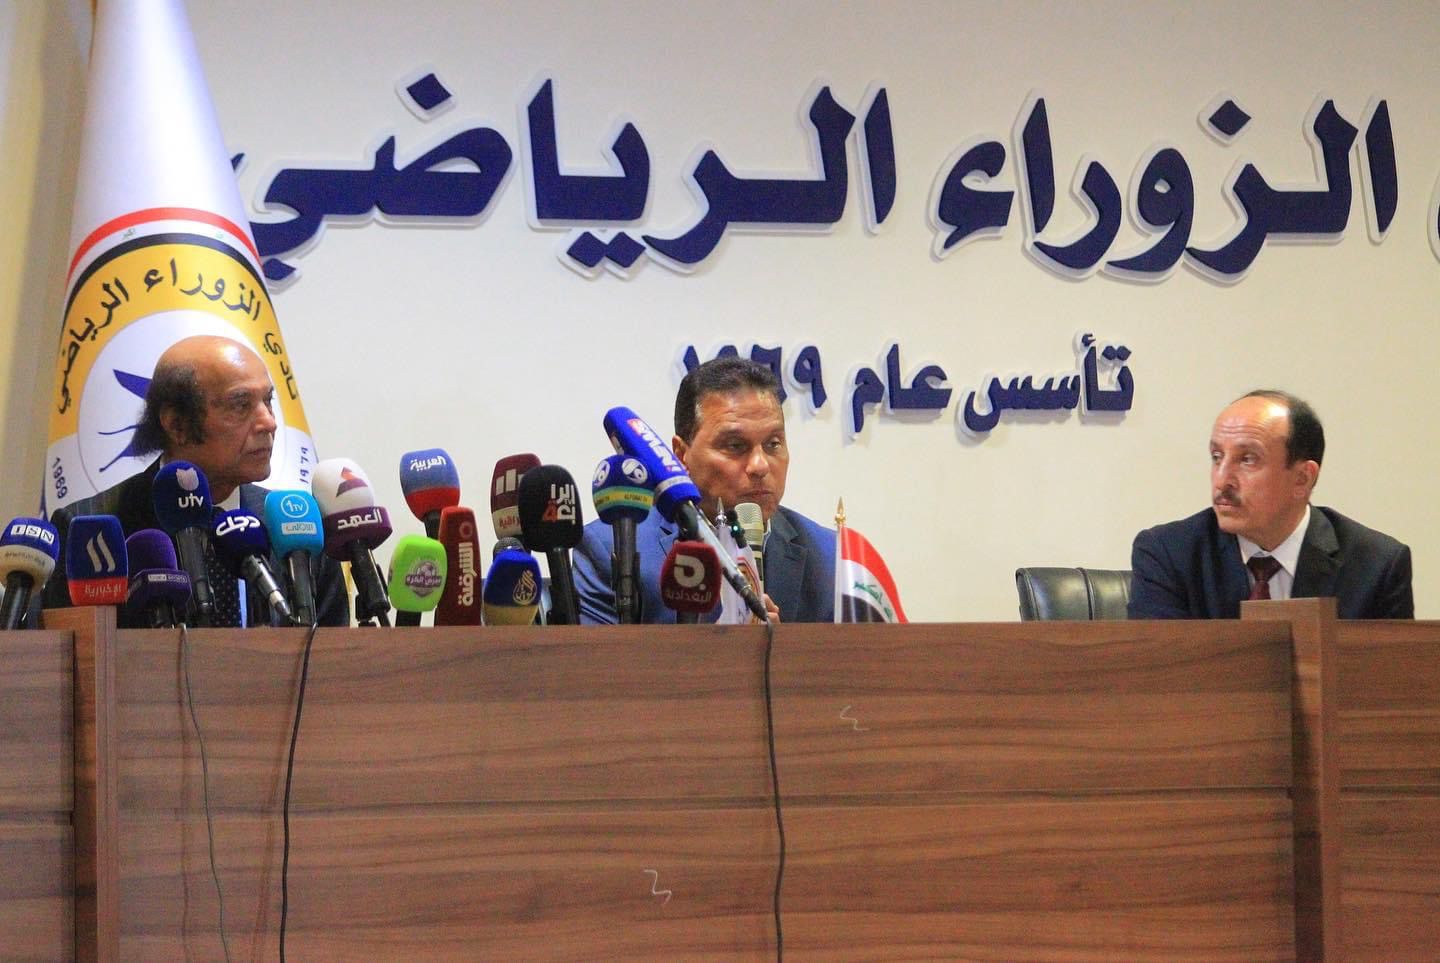 نادي الزوراء يرفض حل إدارته استناداً لقرار لجنة الرياضة النيابية